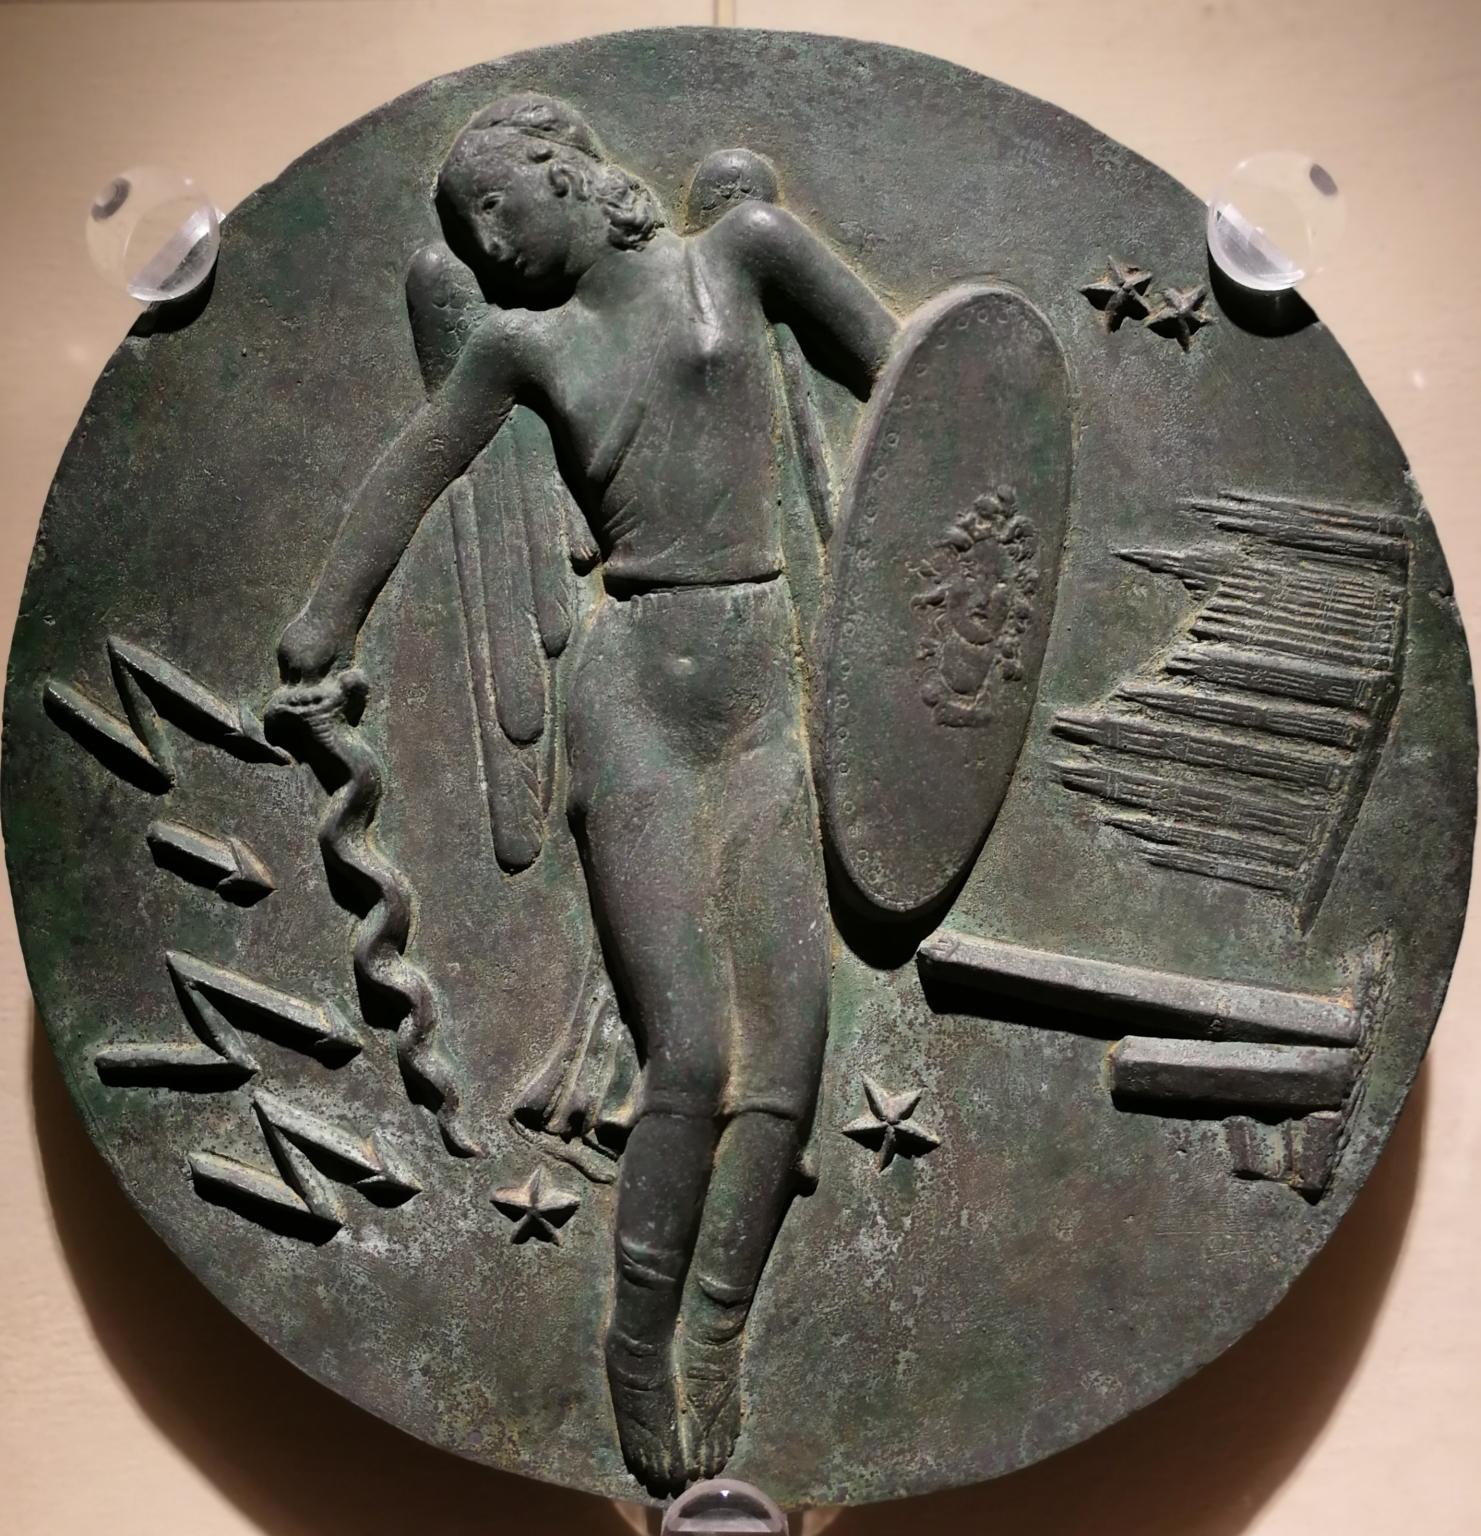 Bassorilievo celebrativo allegorico in bronzo dell'aviazione italiana - Sculpture by Bruno Innocenti